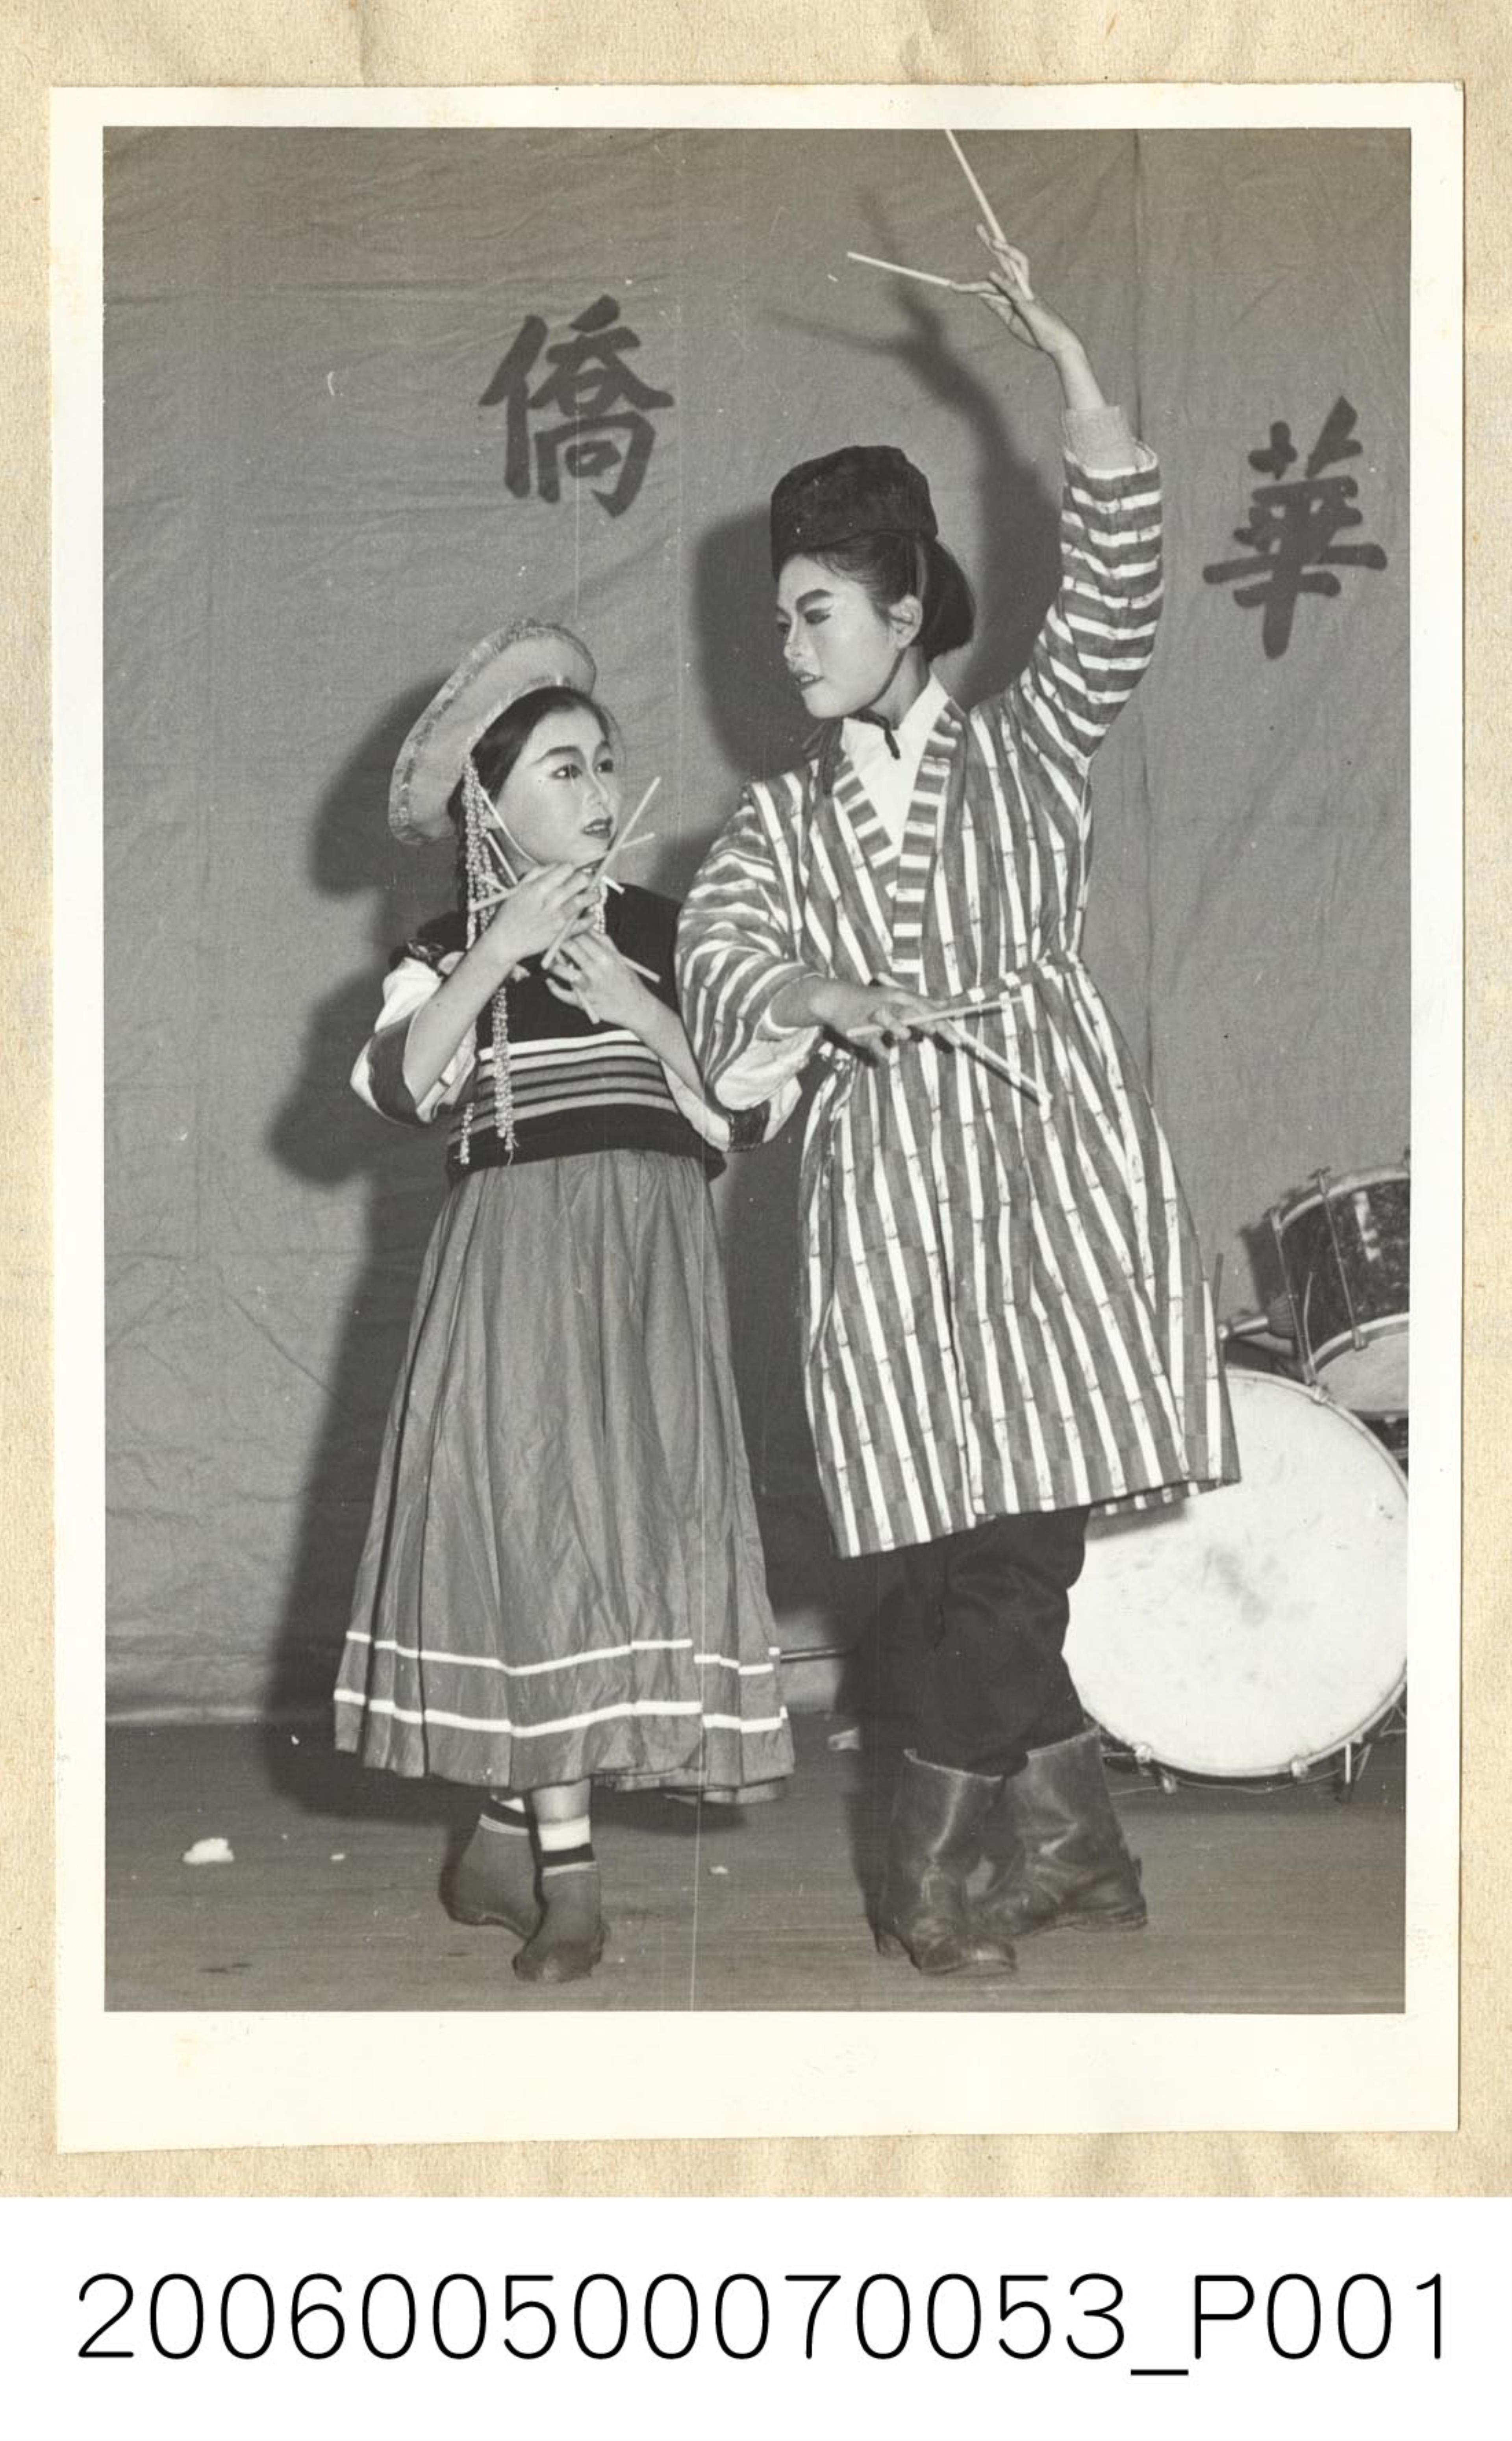 《華僑通訊社新聞照片集》〈僑生同學表演民族舞蹈新疆舞〉 (共1張)